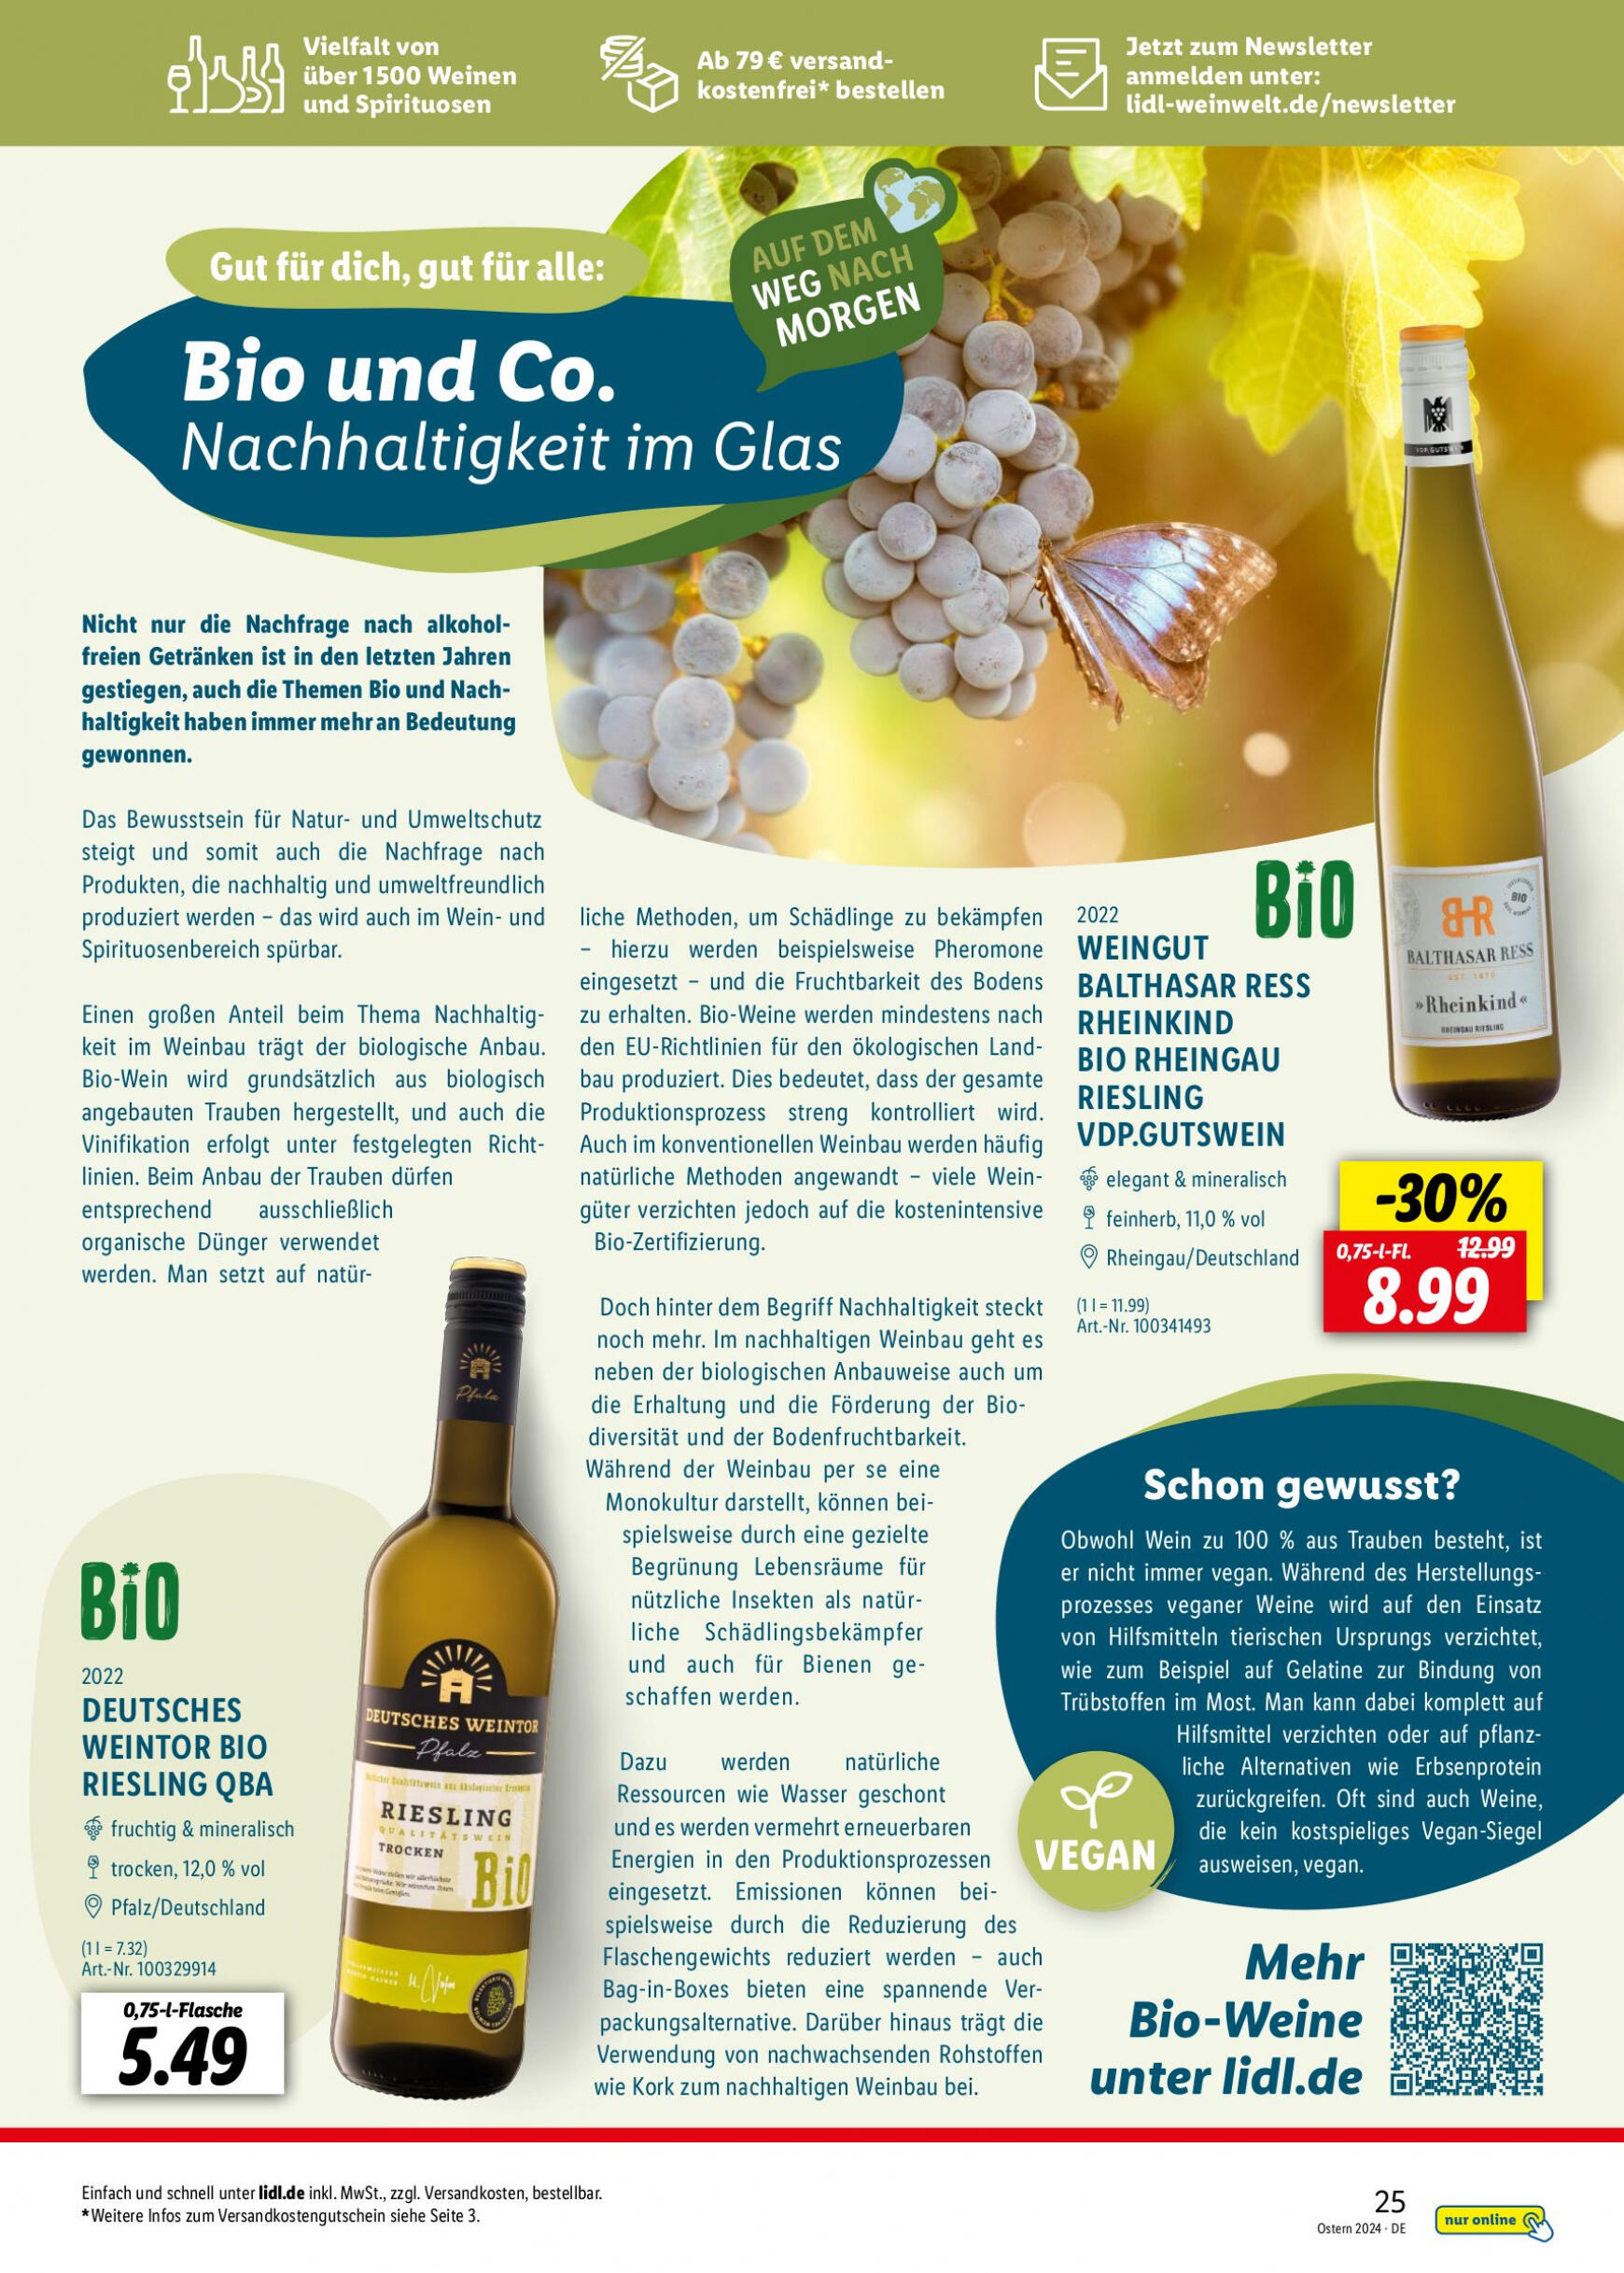 lidl - Flyer Lidl - Wein Entkorkt aktuell 04.03. - 30.04. - page: 25